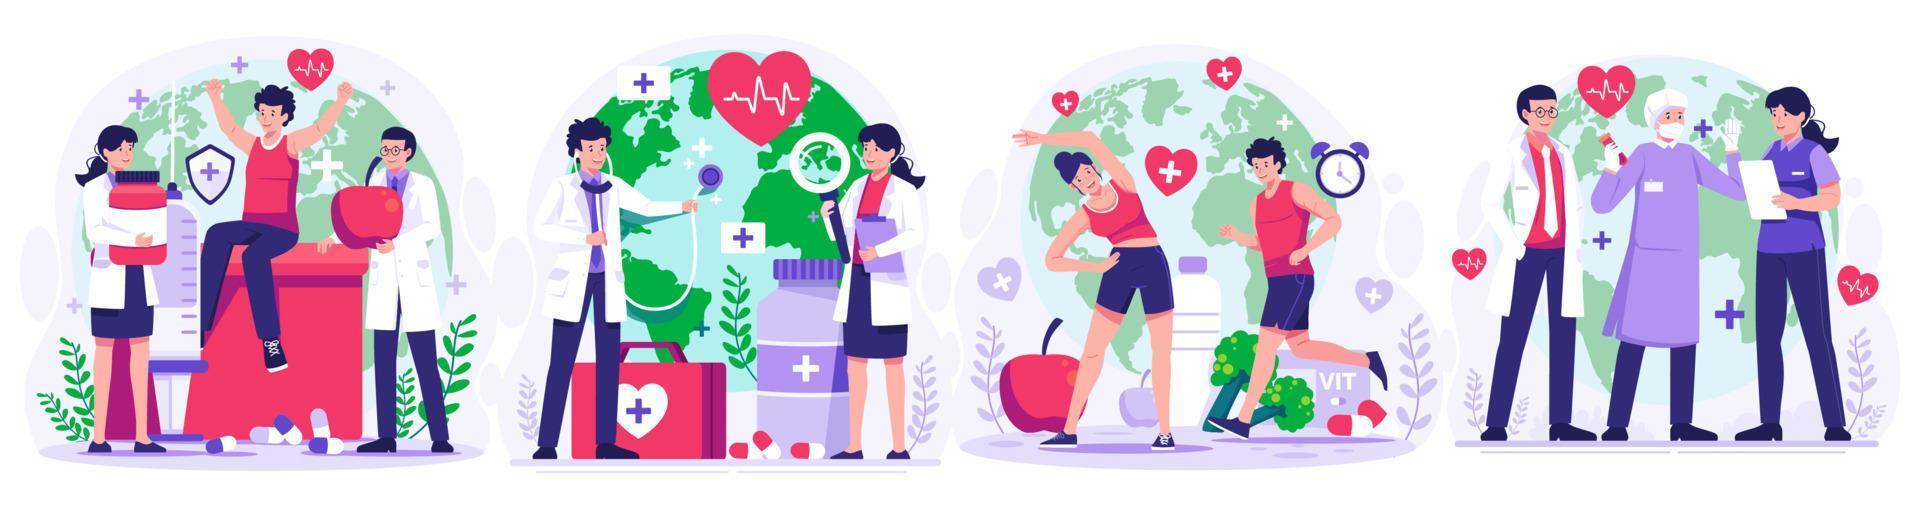 illustration uppsättning av värld hälsa dag begrepp med grupp av personal medicinsk doktorer och sjuksköterskor, människor levande friska aktivitet, person joggning, cykling, yoga. vektor illustration